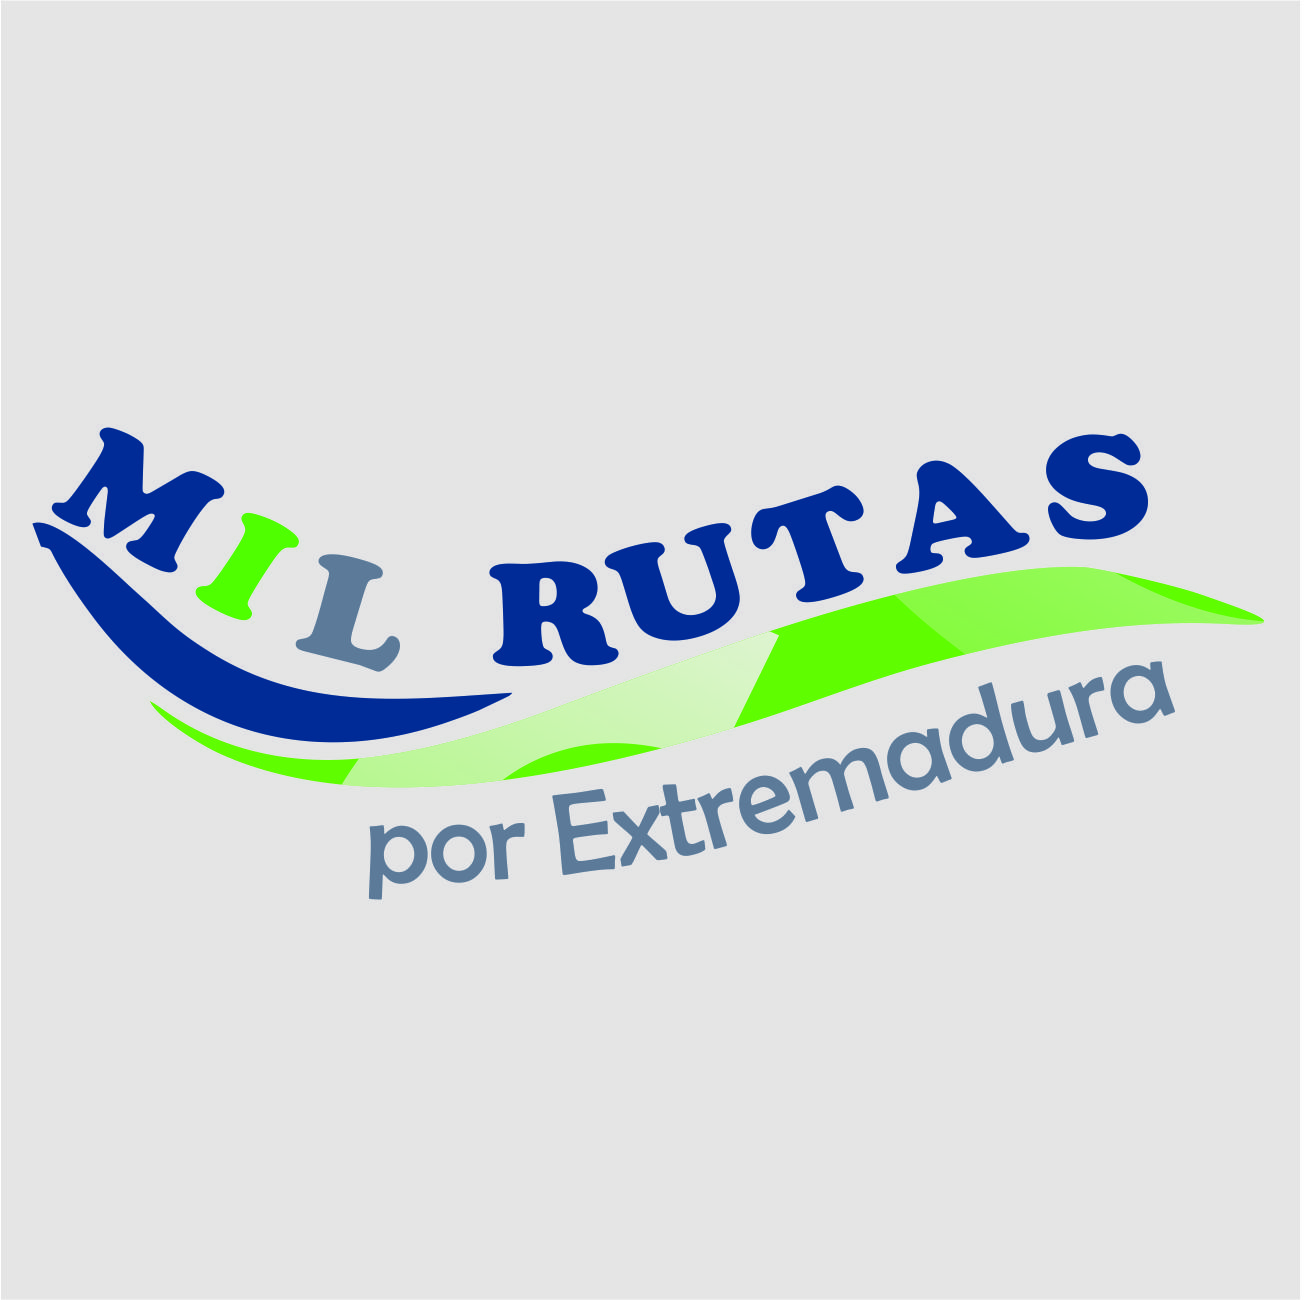 Patrocinador – MIL RUTAS Por Extremadura